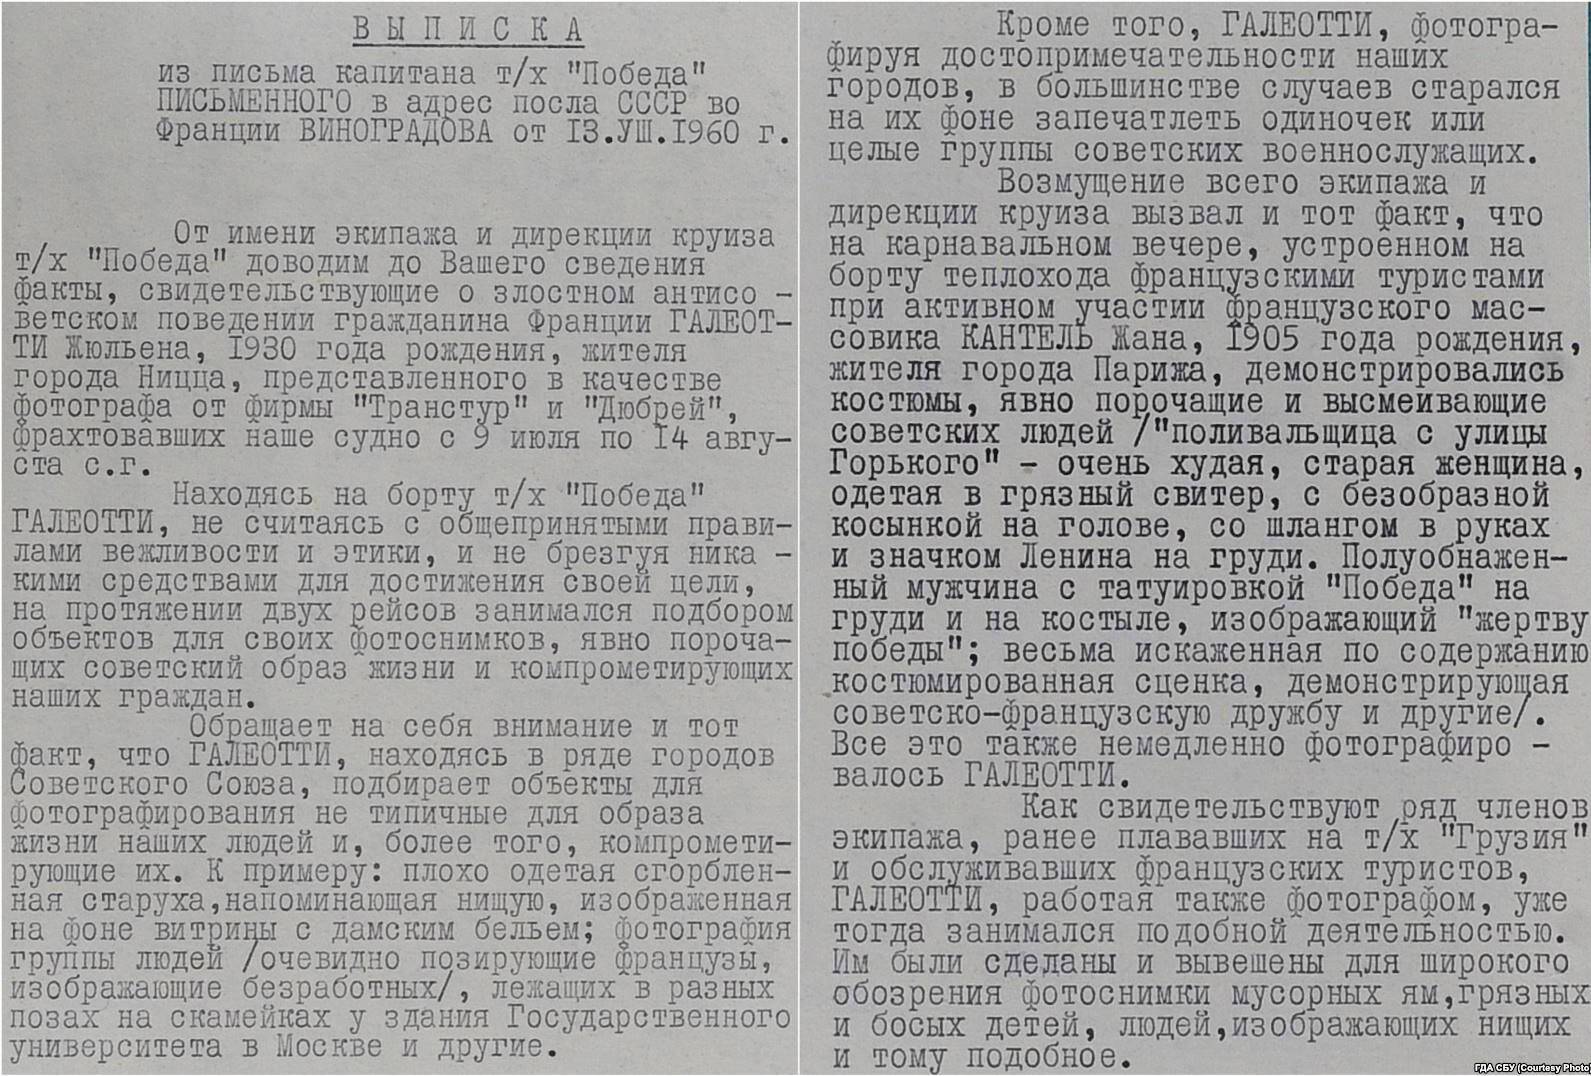 Звіт спецслужб СРСР про "антирадянську" поведінку громадянина Галеотті